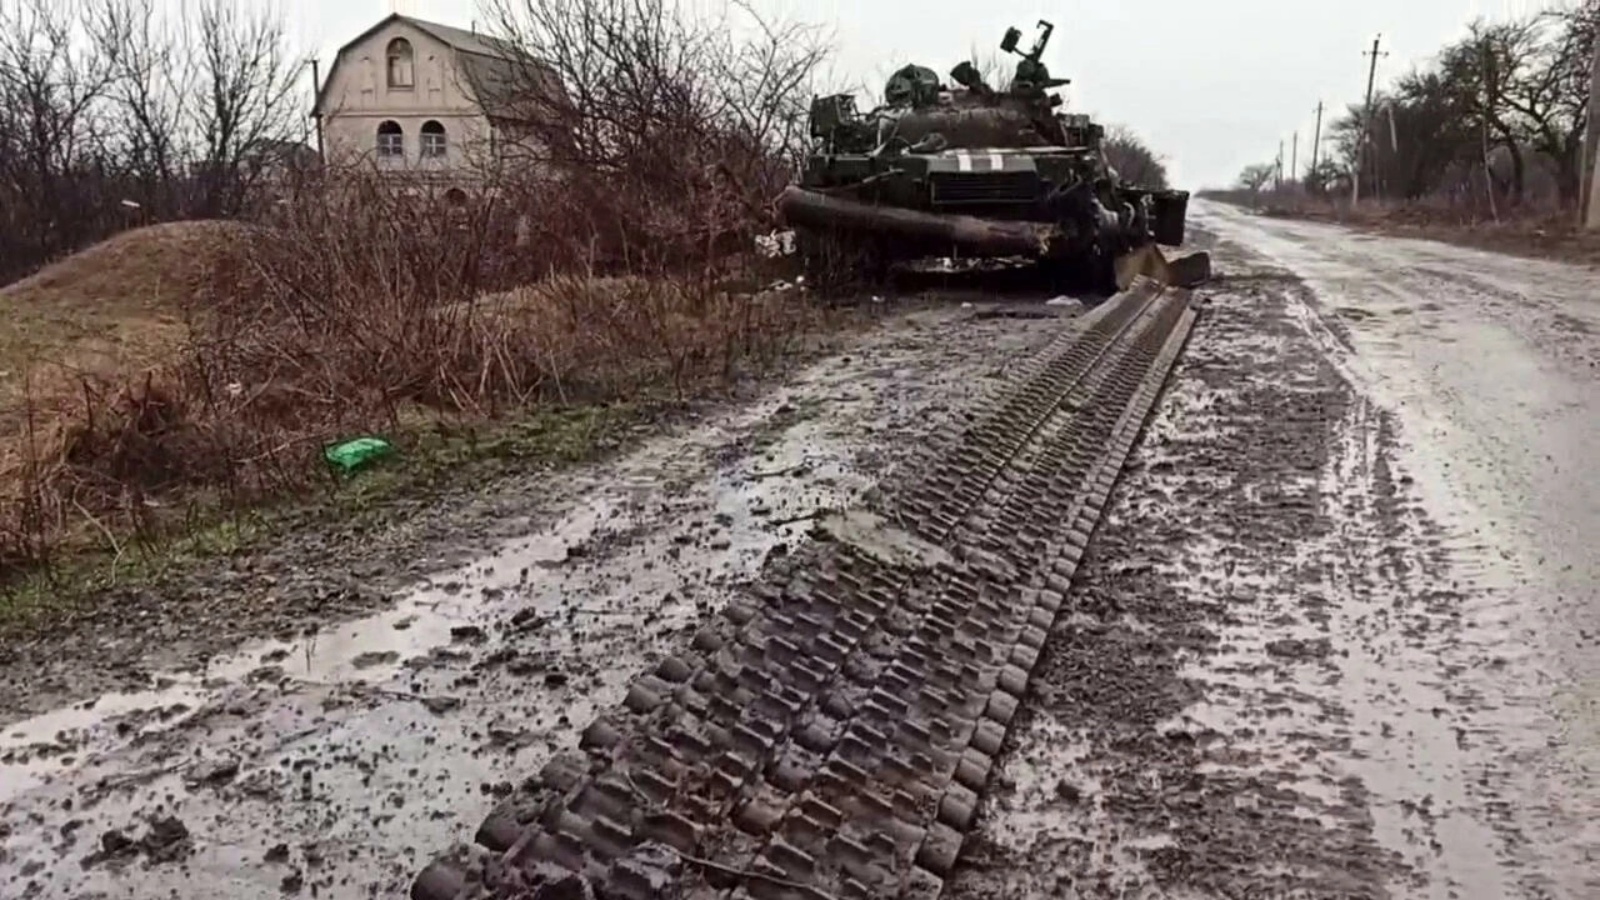 دبابة للجيش الروسي بالقرب من ماريوبول، الجمعة 4 مارس 2022